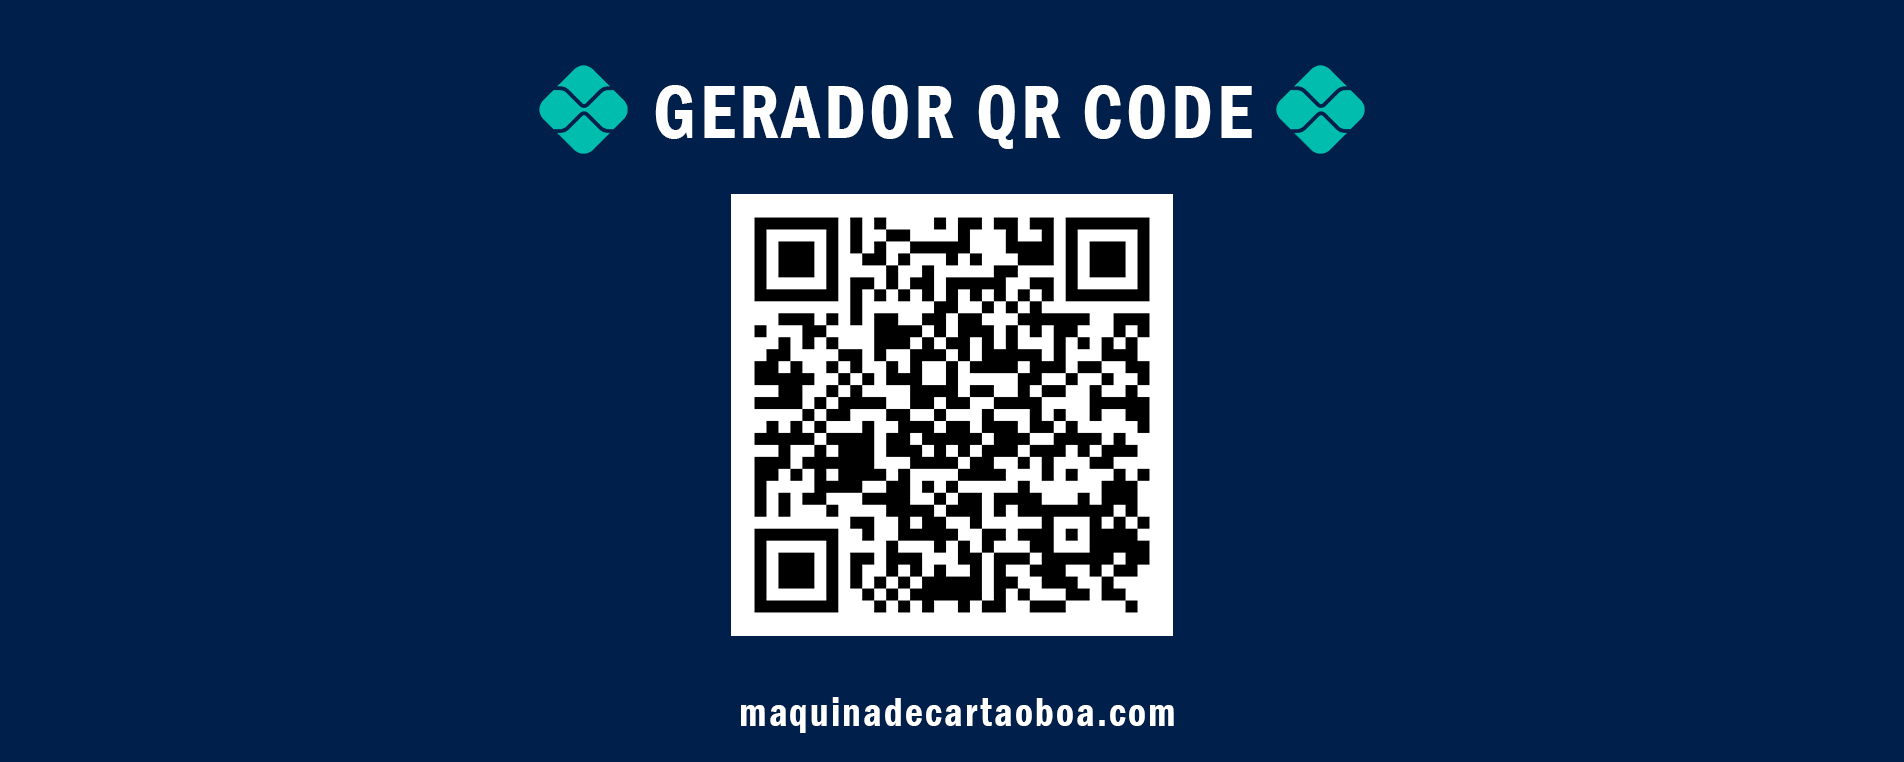 Gerador QR Code1.jpg | Máquina de Cartão Boa